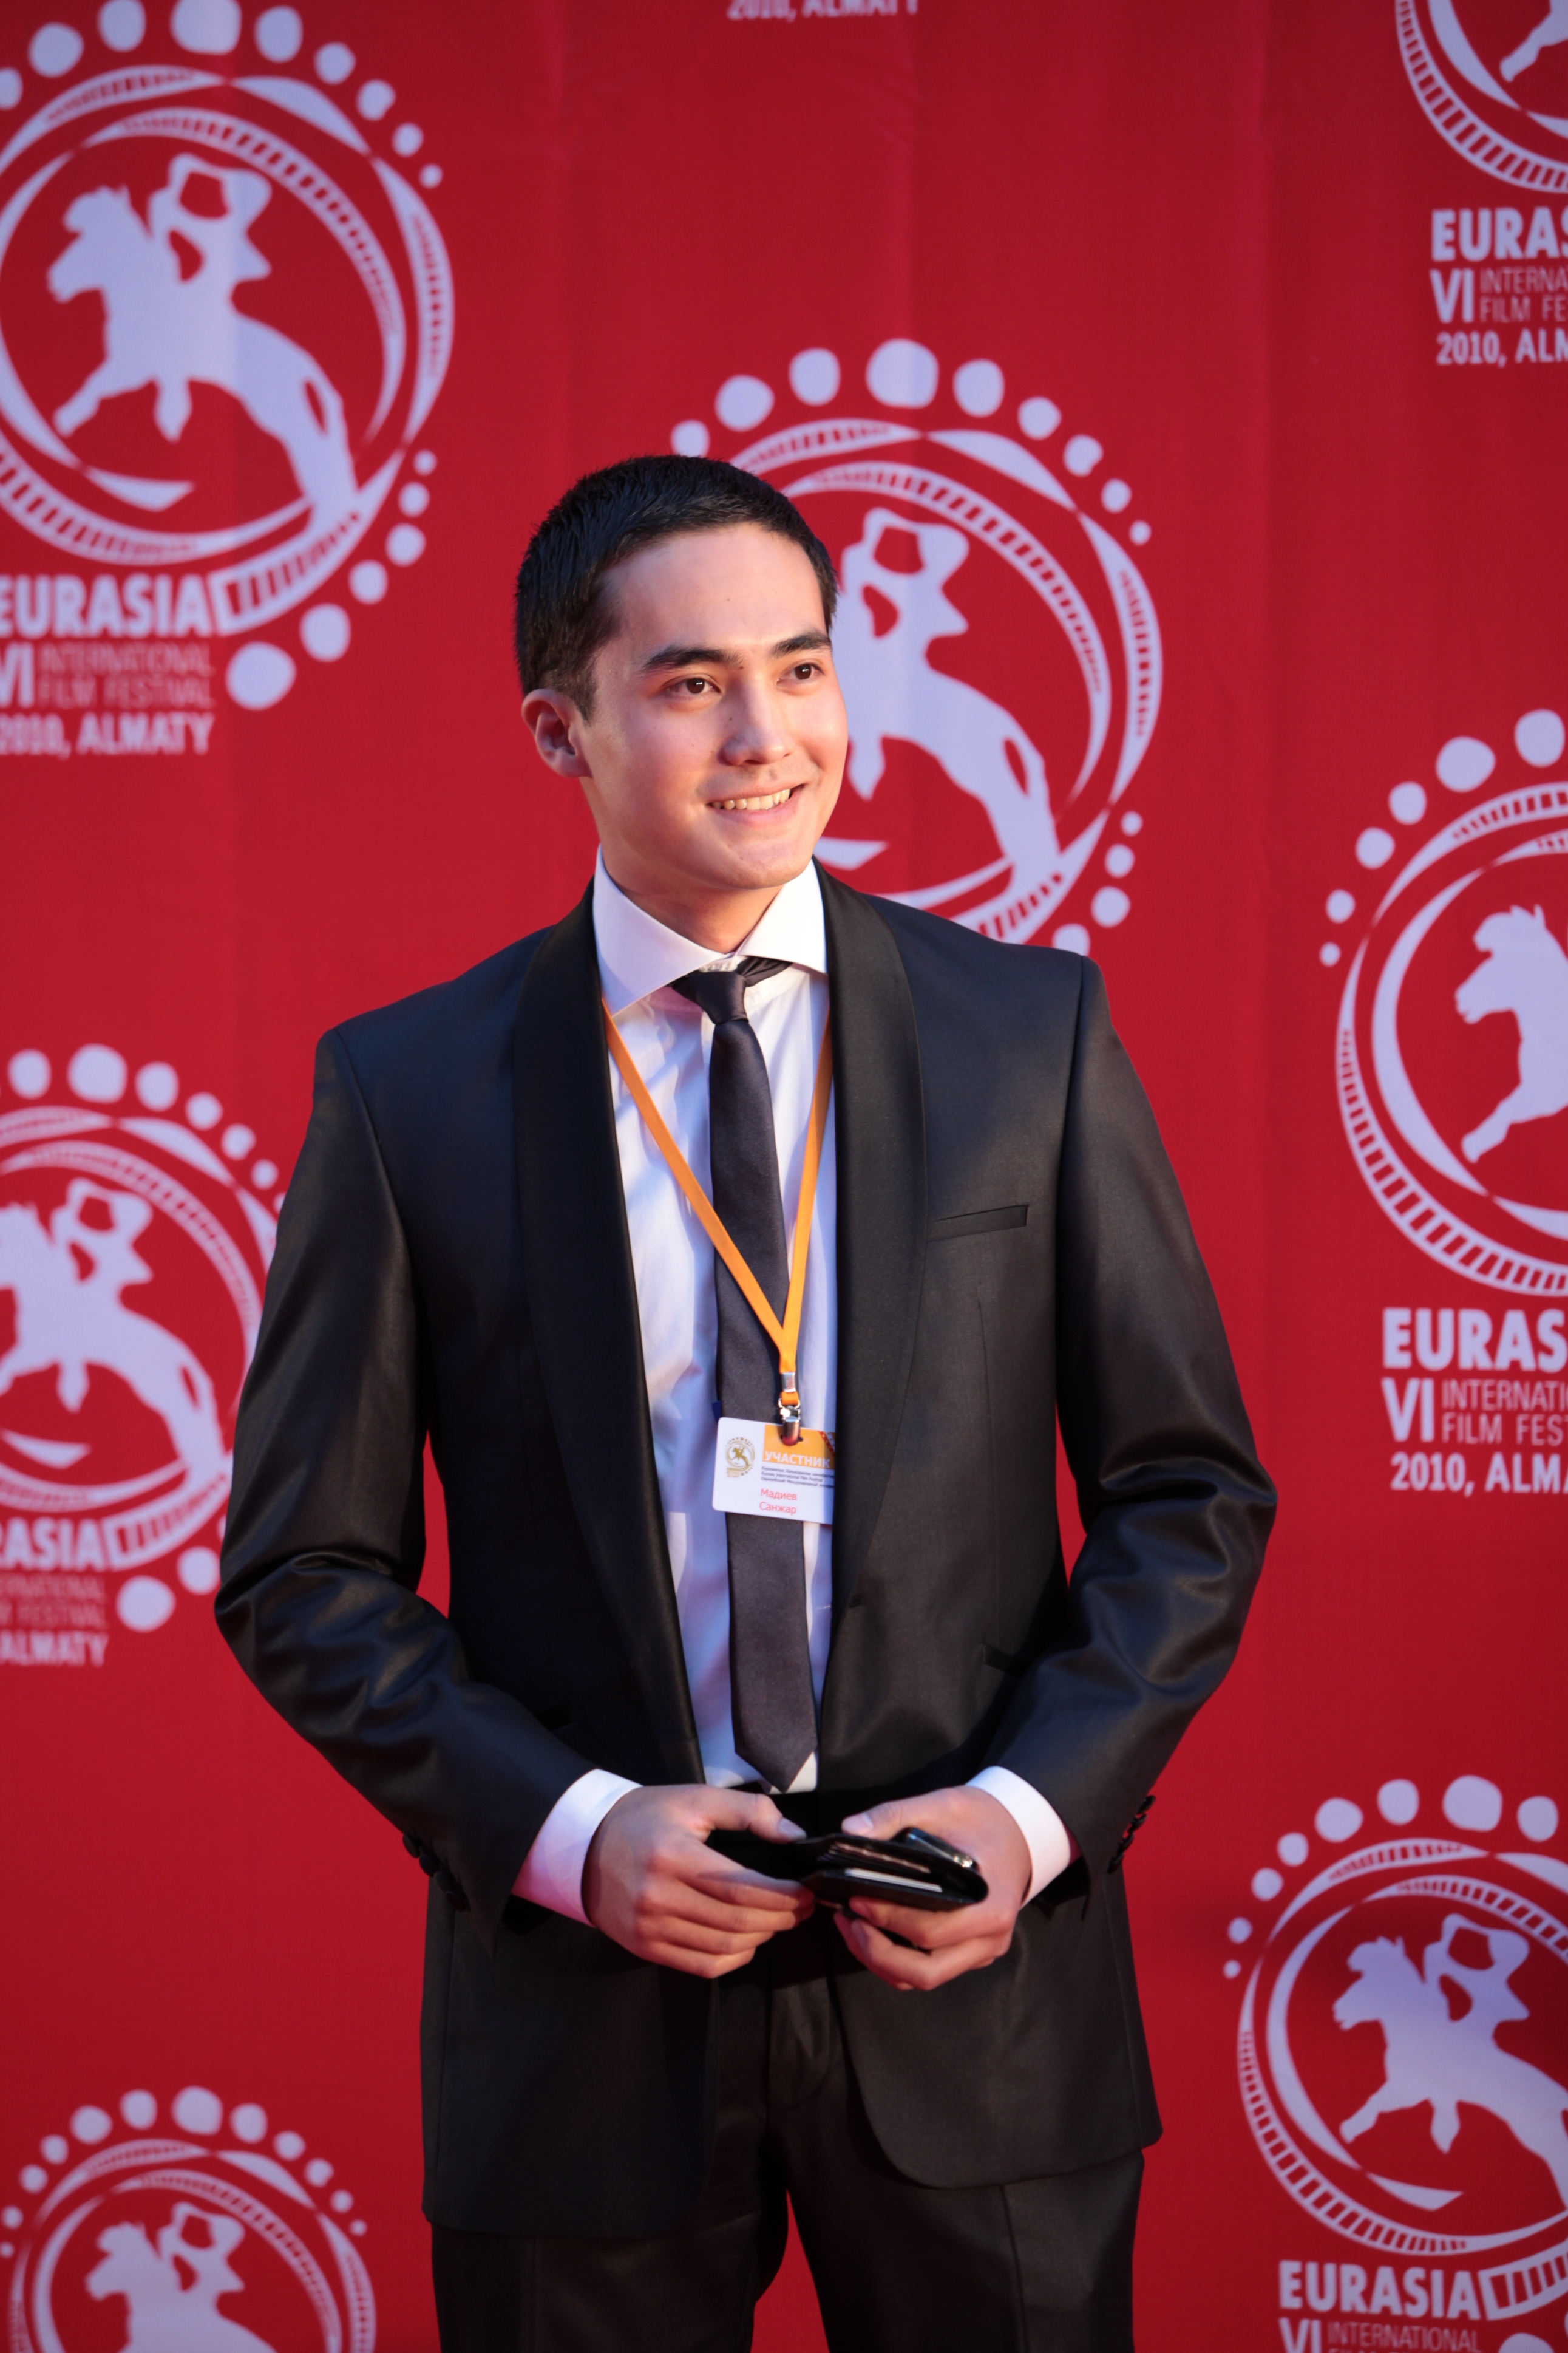 International Eurasia Film Festival